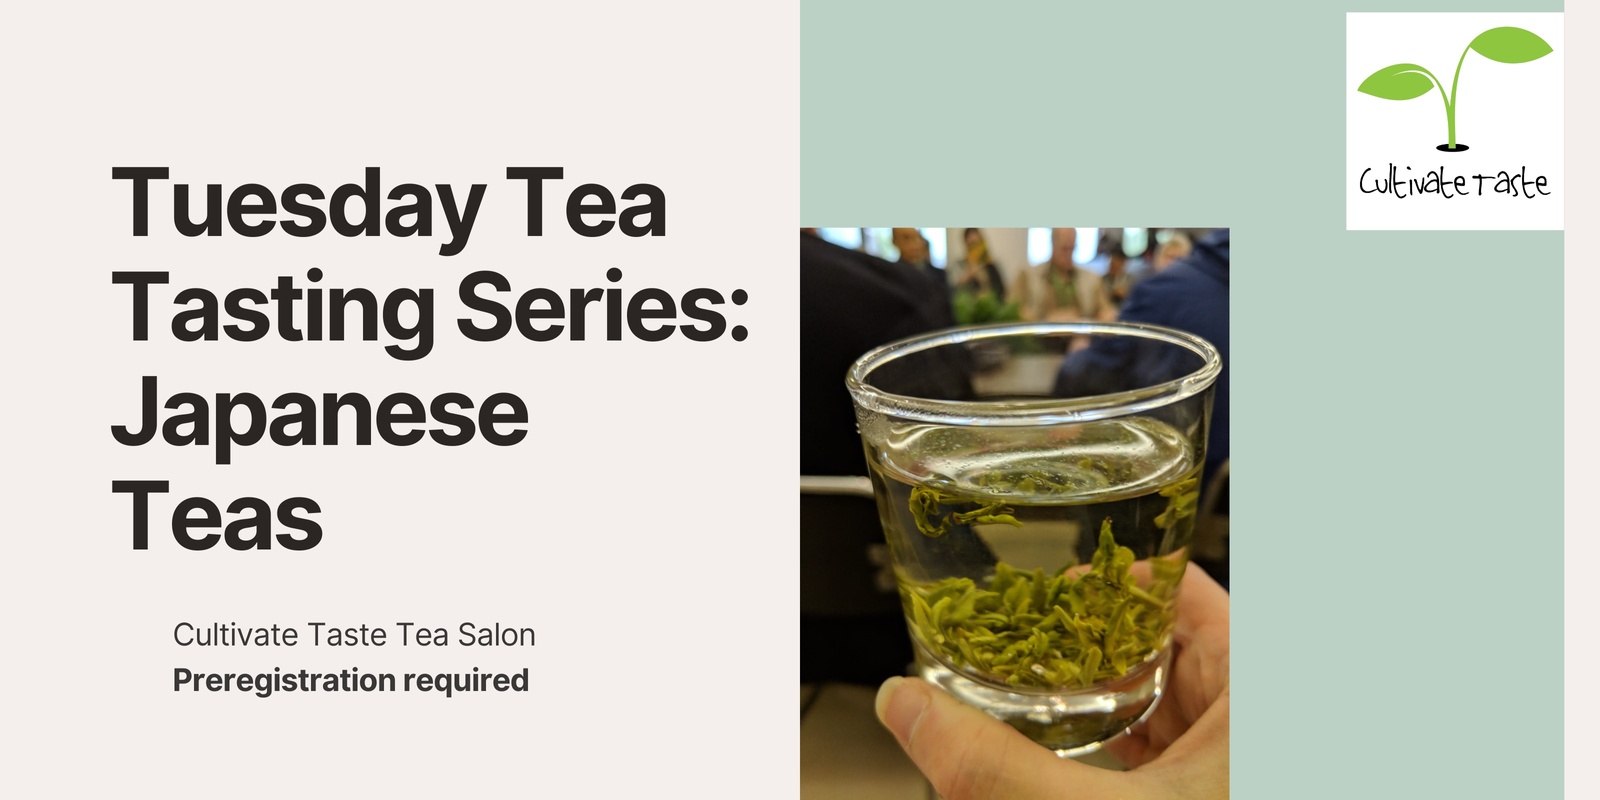 Banner image for Tea Tasting: Japanese Teas